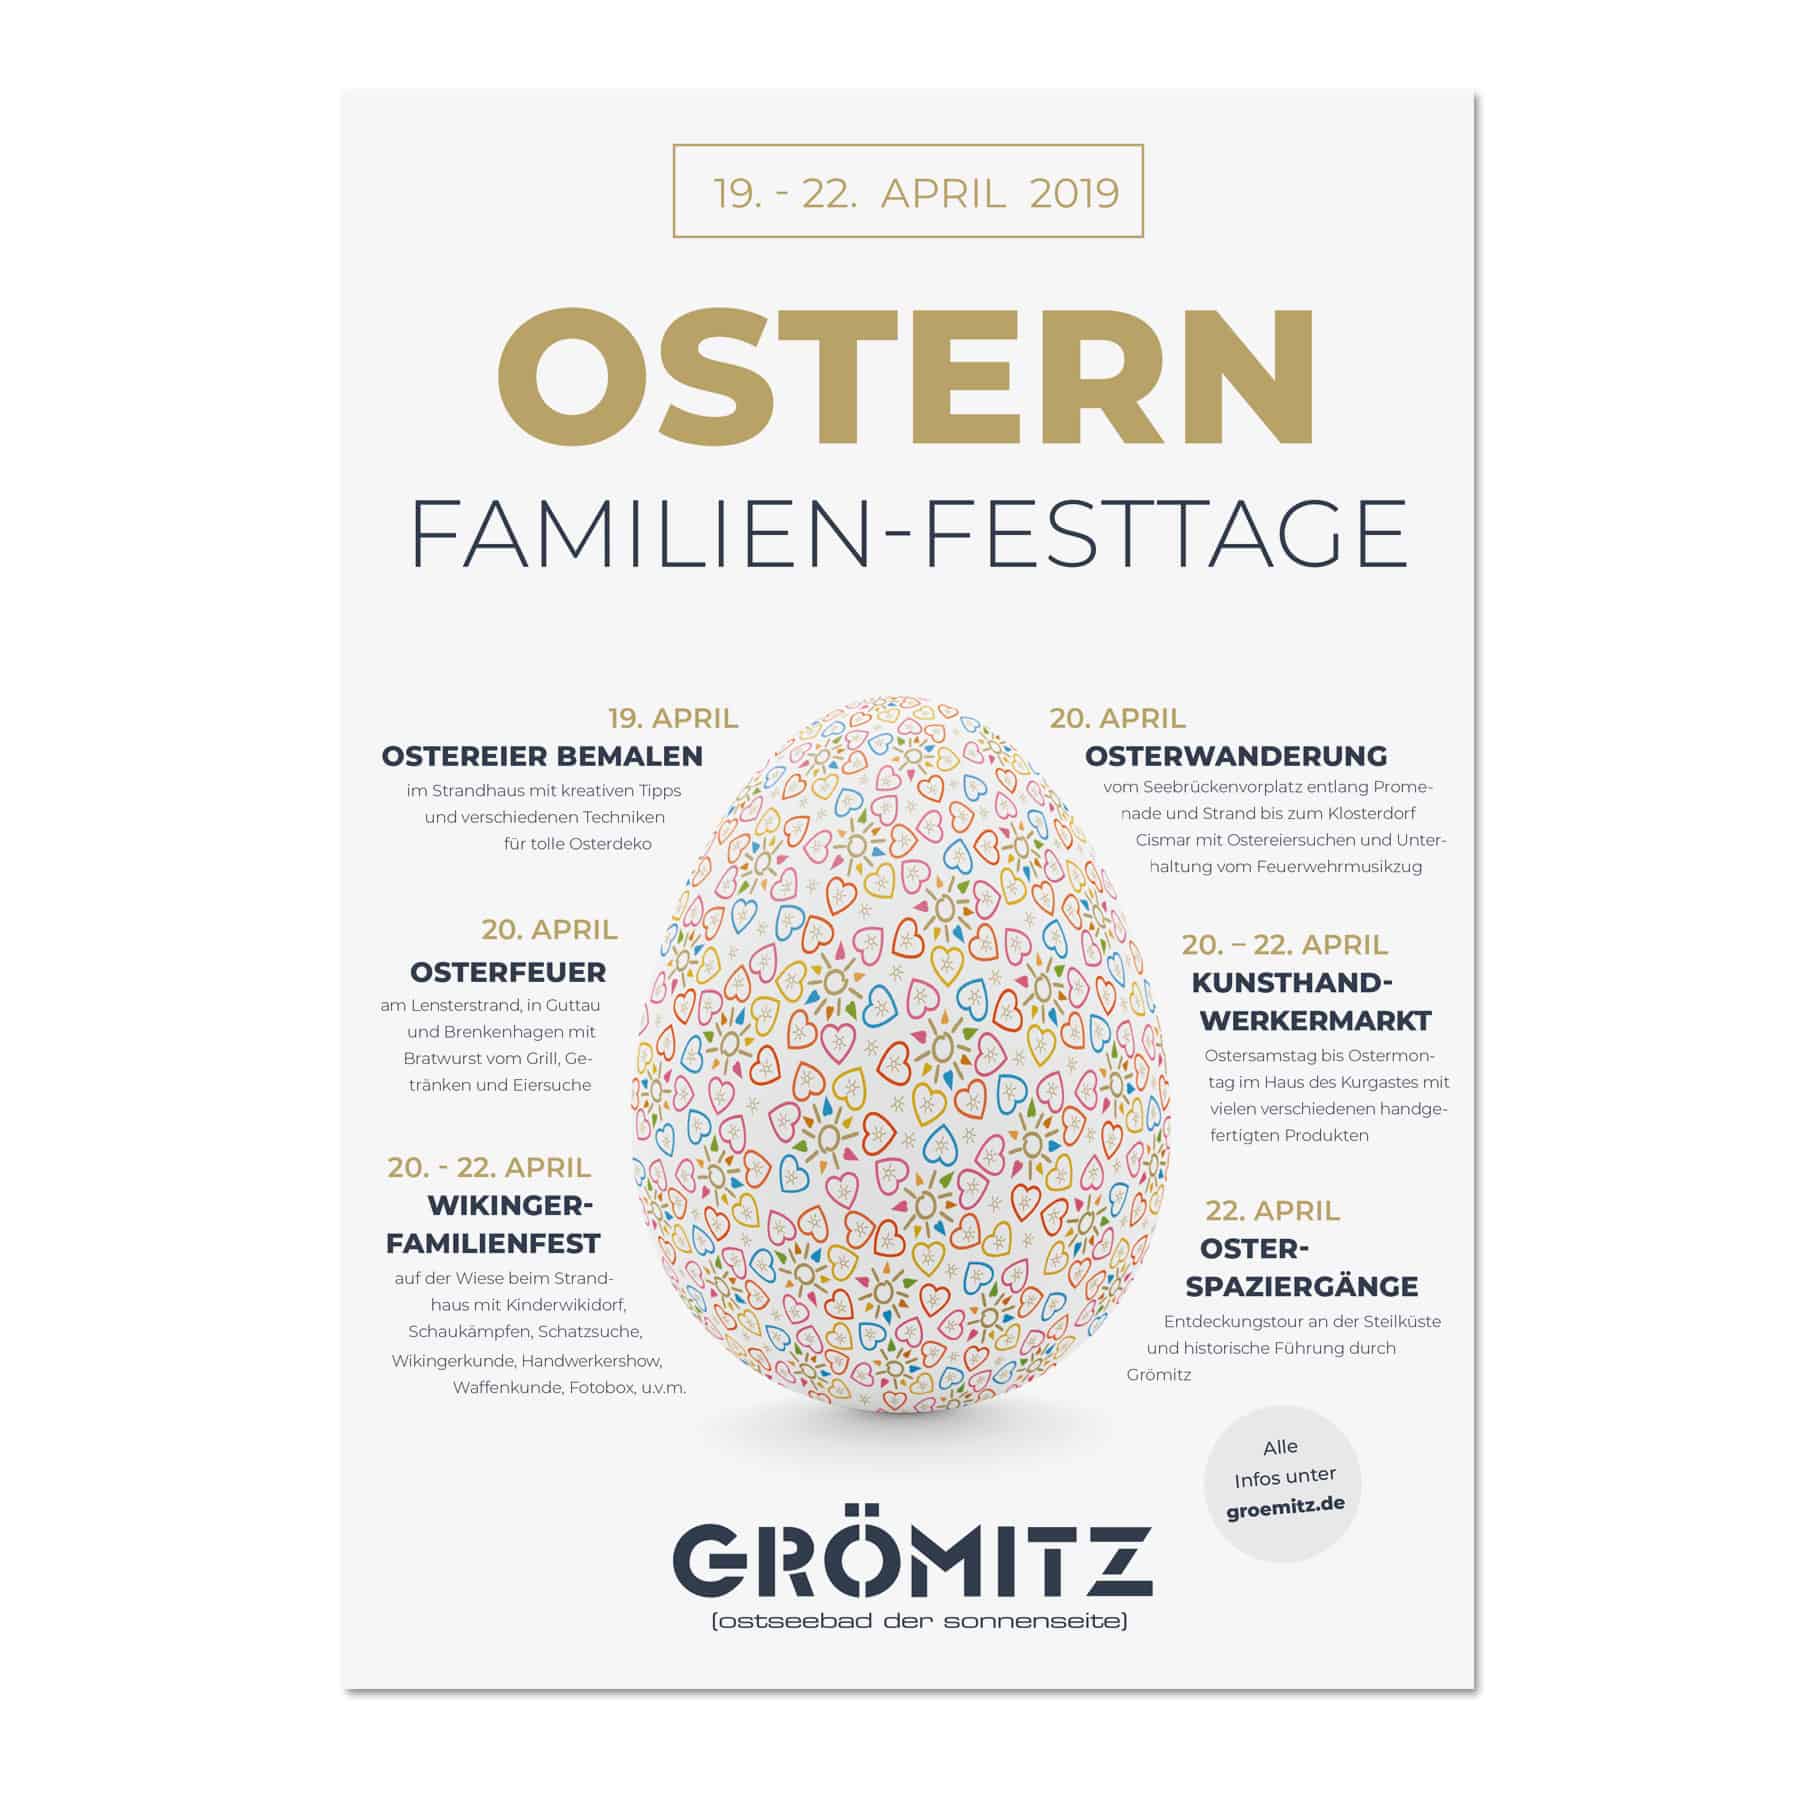 La Deutsche Vita - Drucksachen Plakat Ostern Grömitz